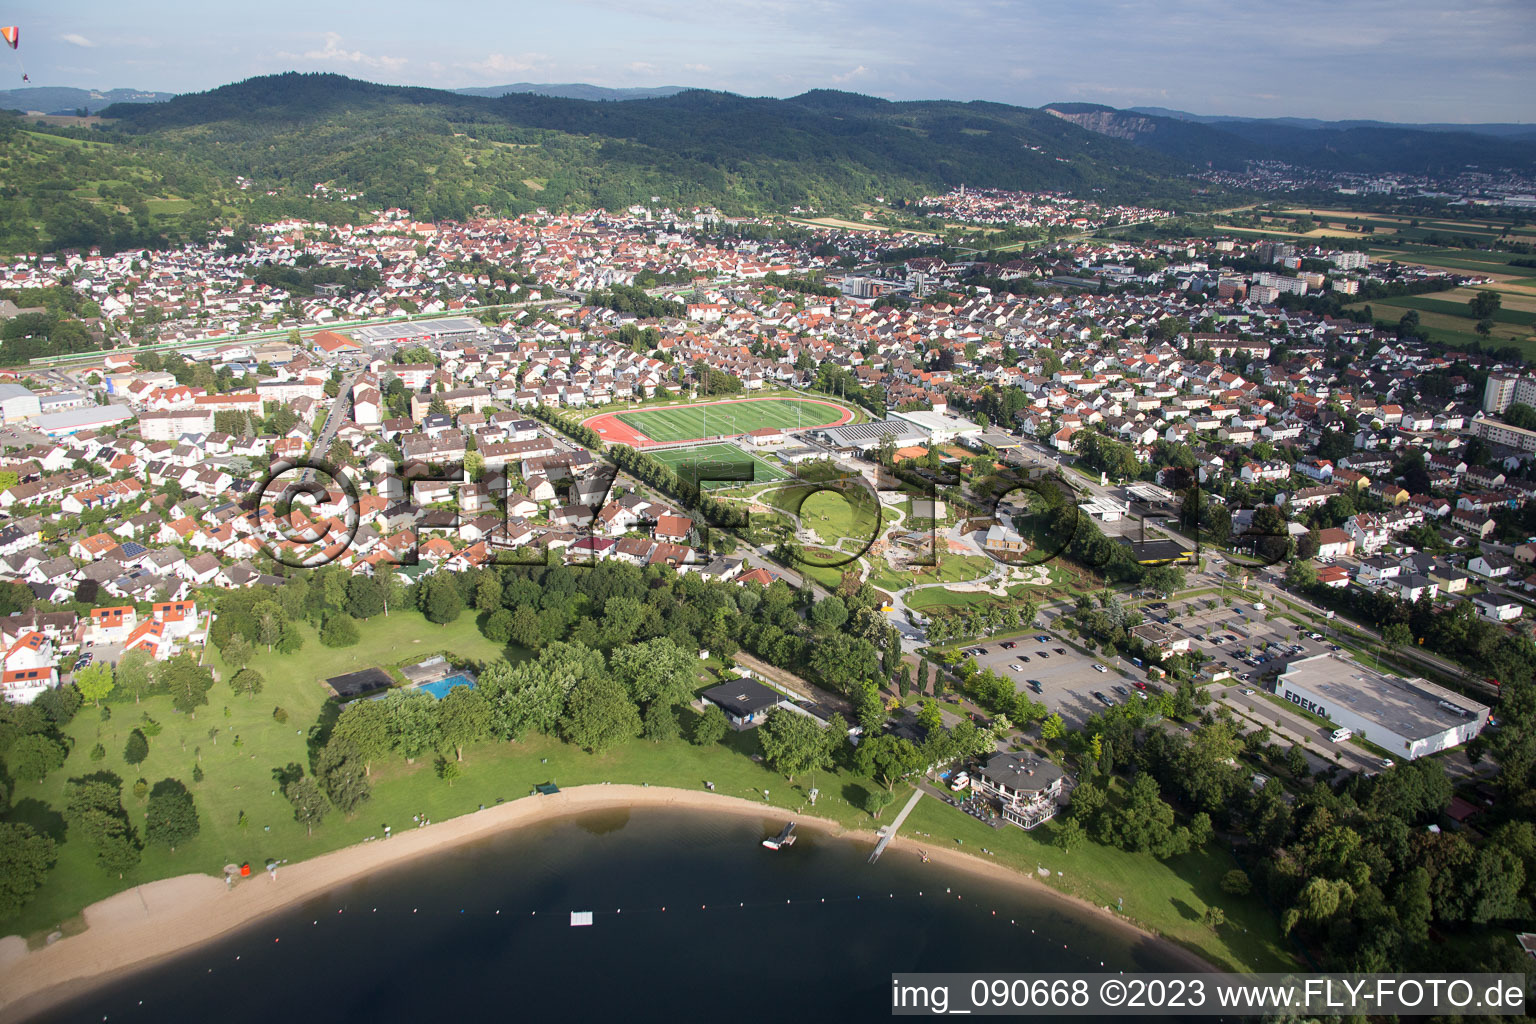 Hemsbach im Bundesland Baden-Württemberg, Deutschland aus der Luft betrachtet